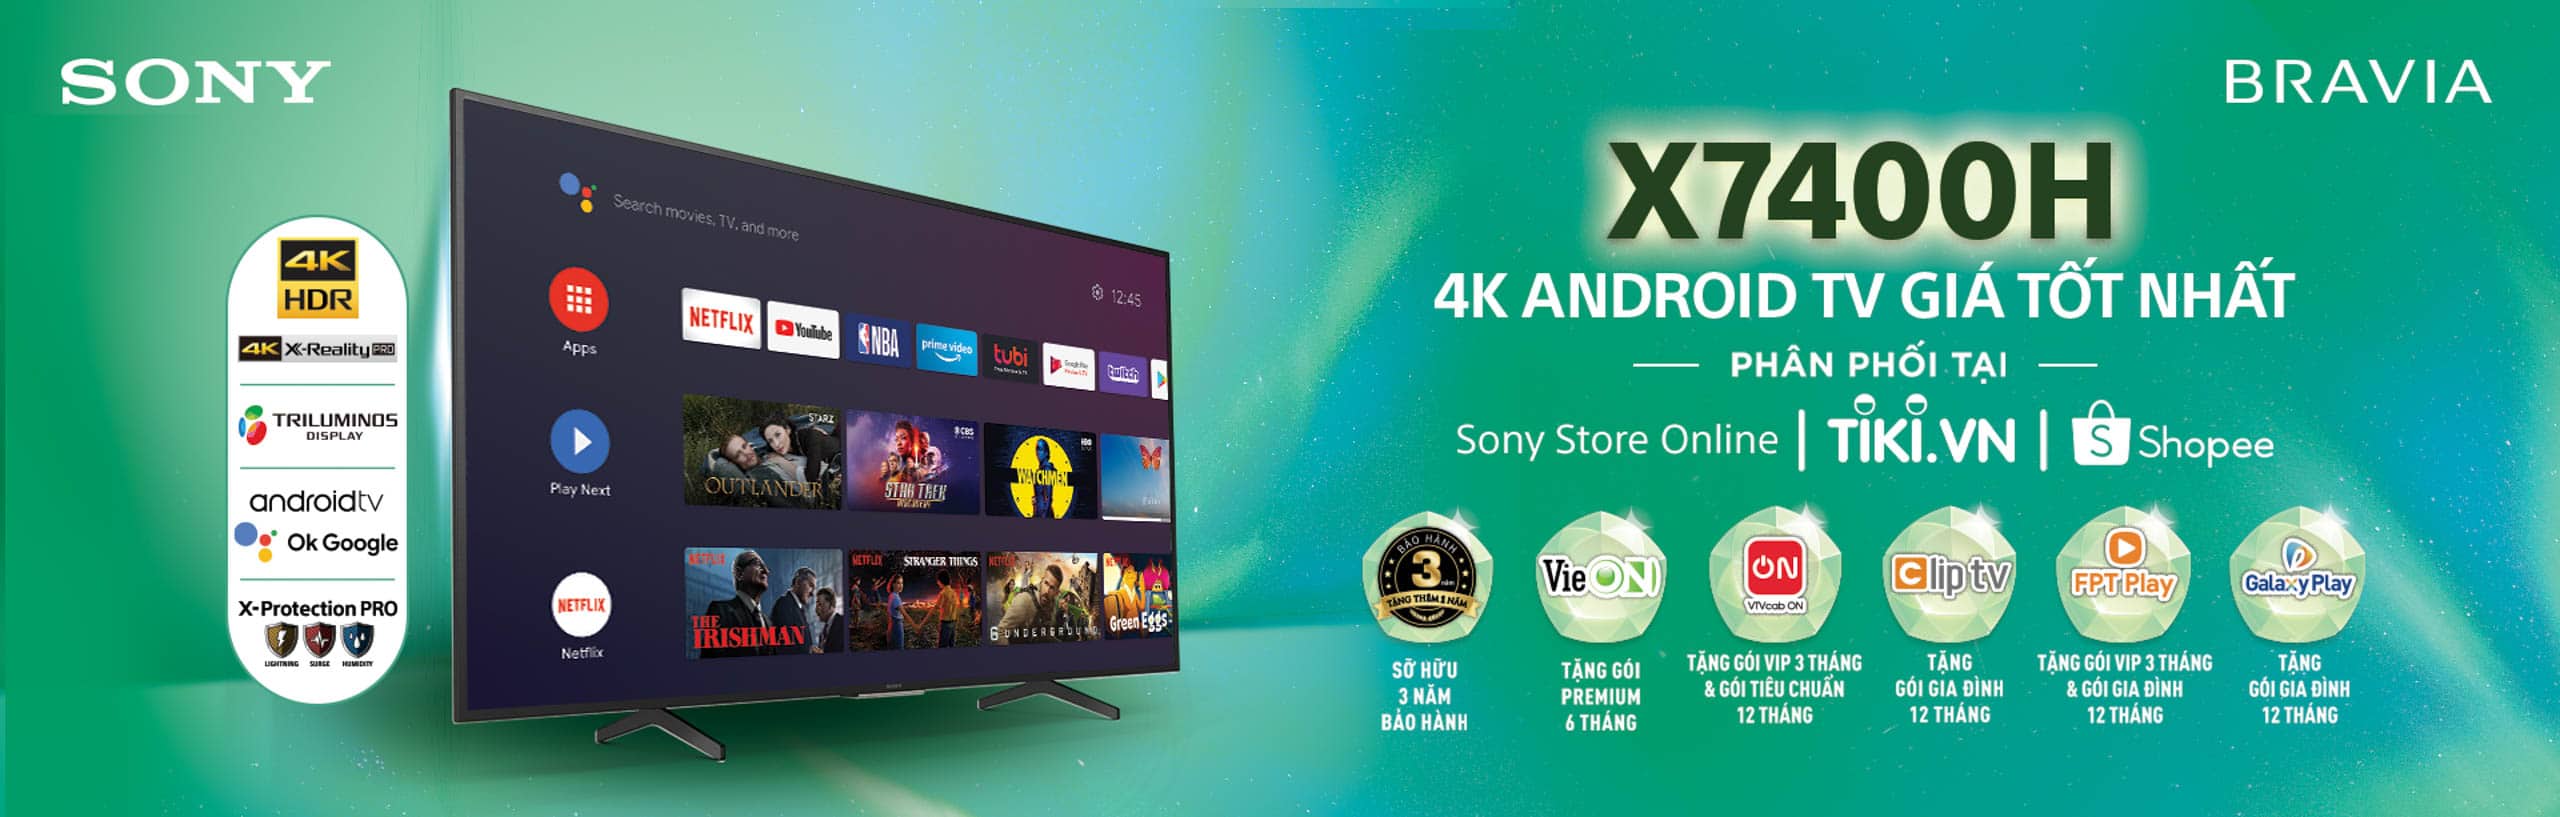 Sony ra mắt cửa hàng trực tuyến chính hãng đầu tiên tại Việt Nam với chương trình ưu đãi lên đến 40%